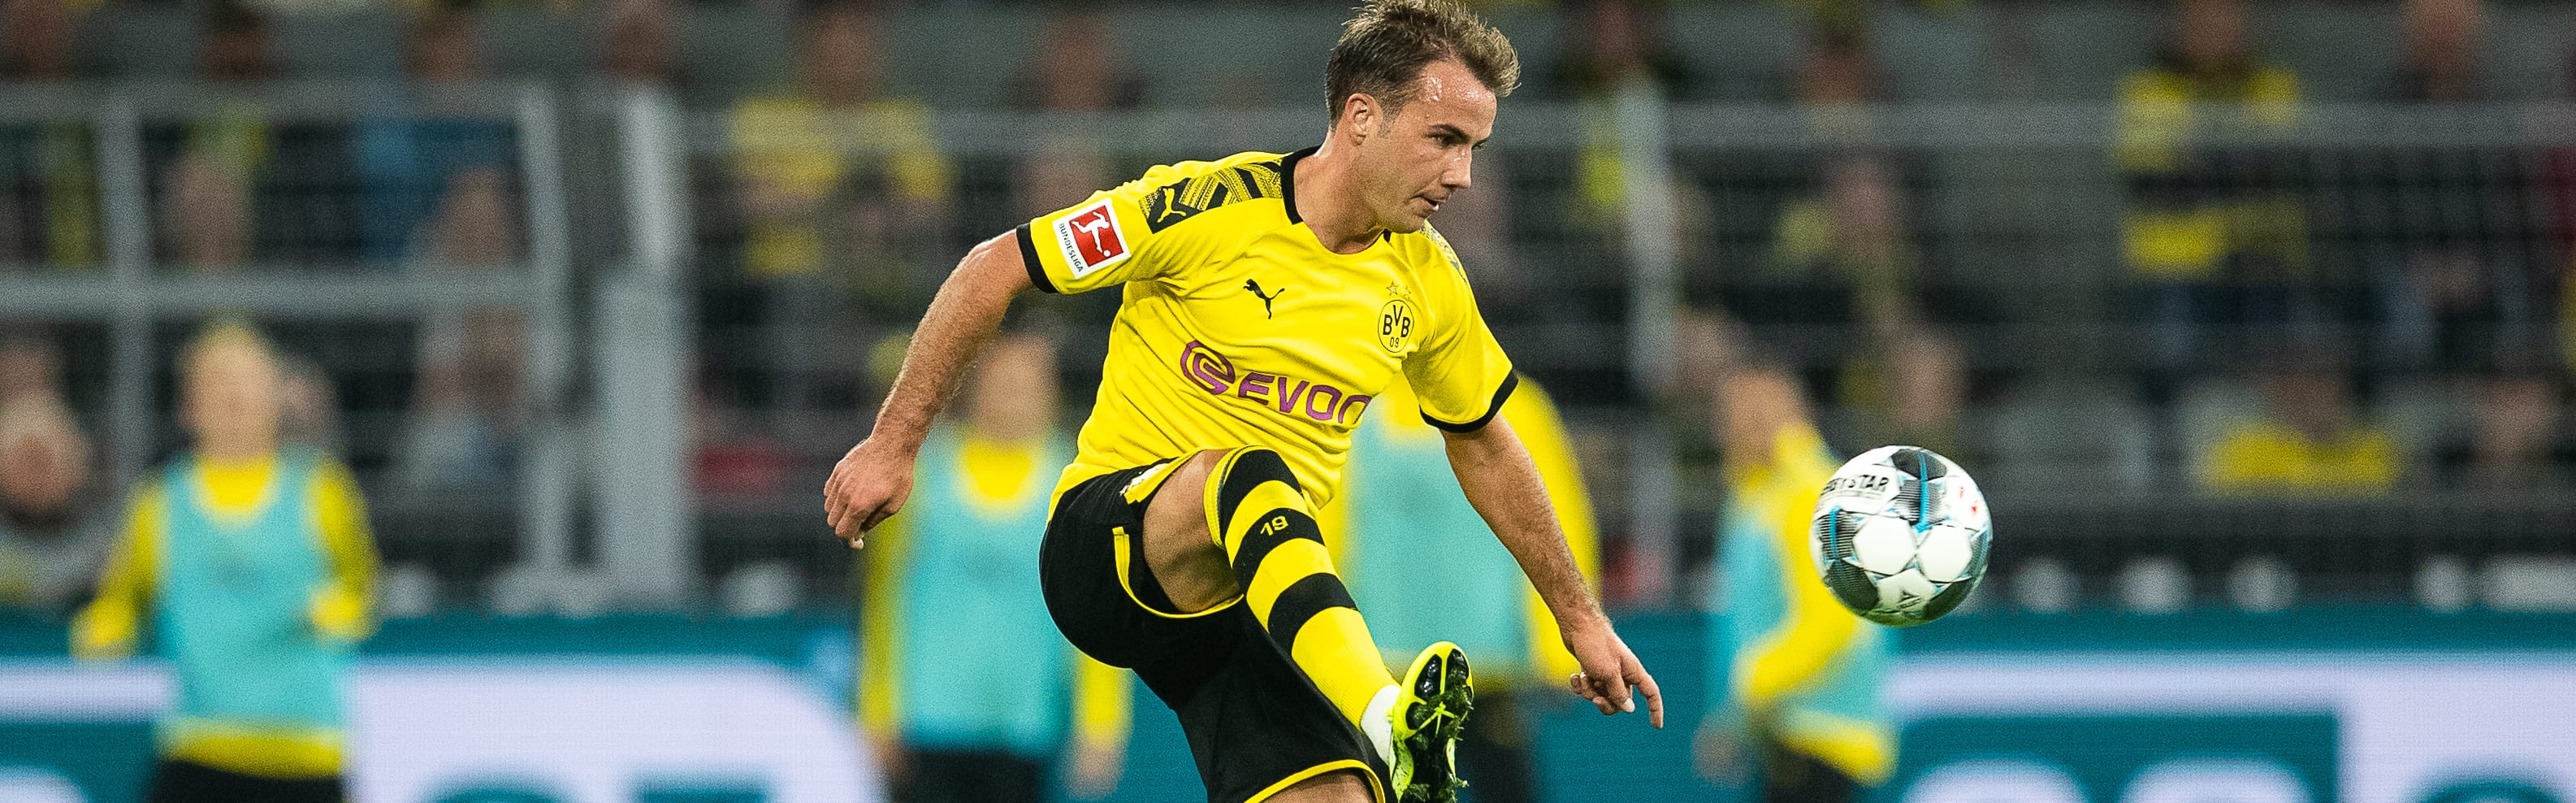 Borussia Dortmund-Borussia M'Gladbach: Favre vuole avvicinarsi ai Fohlen